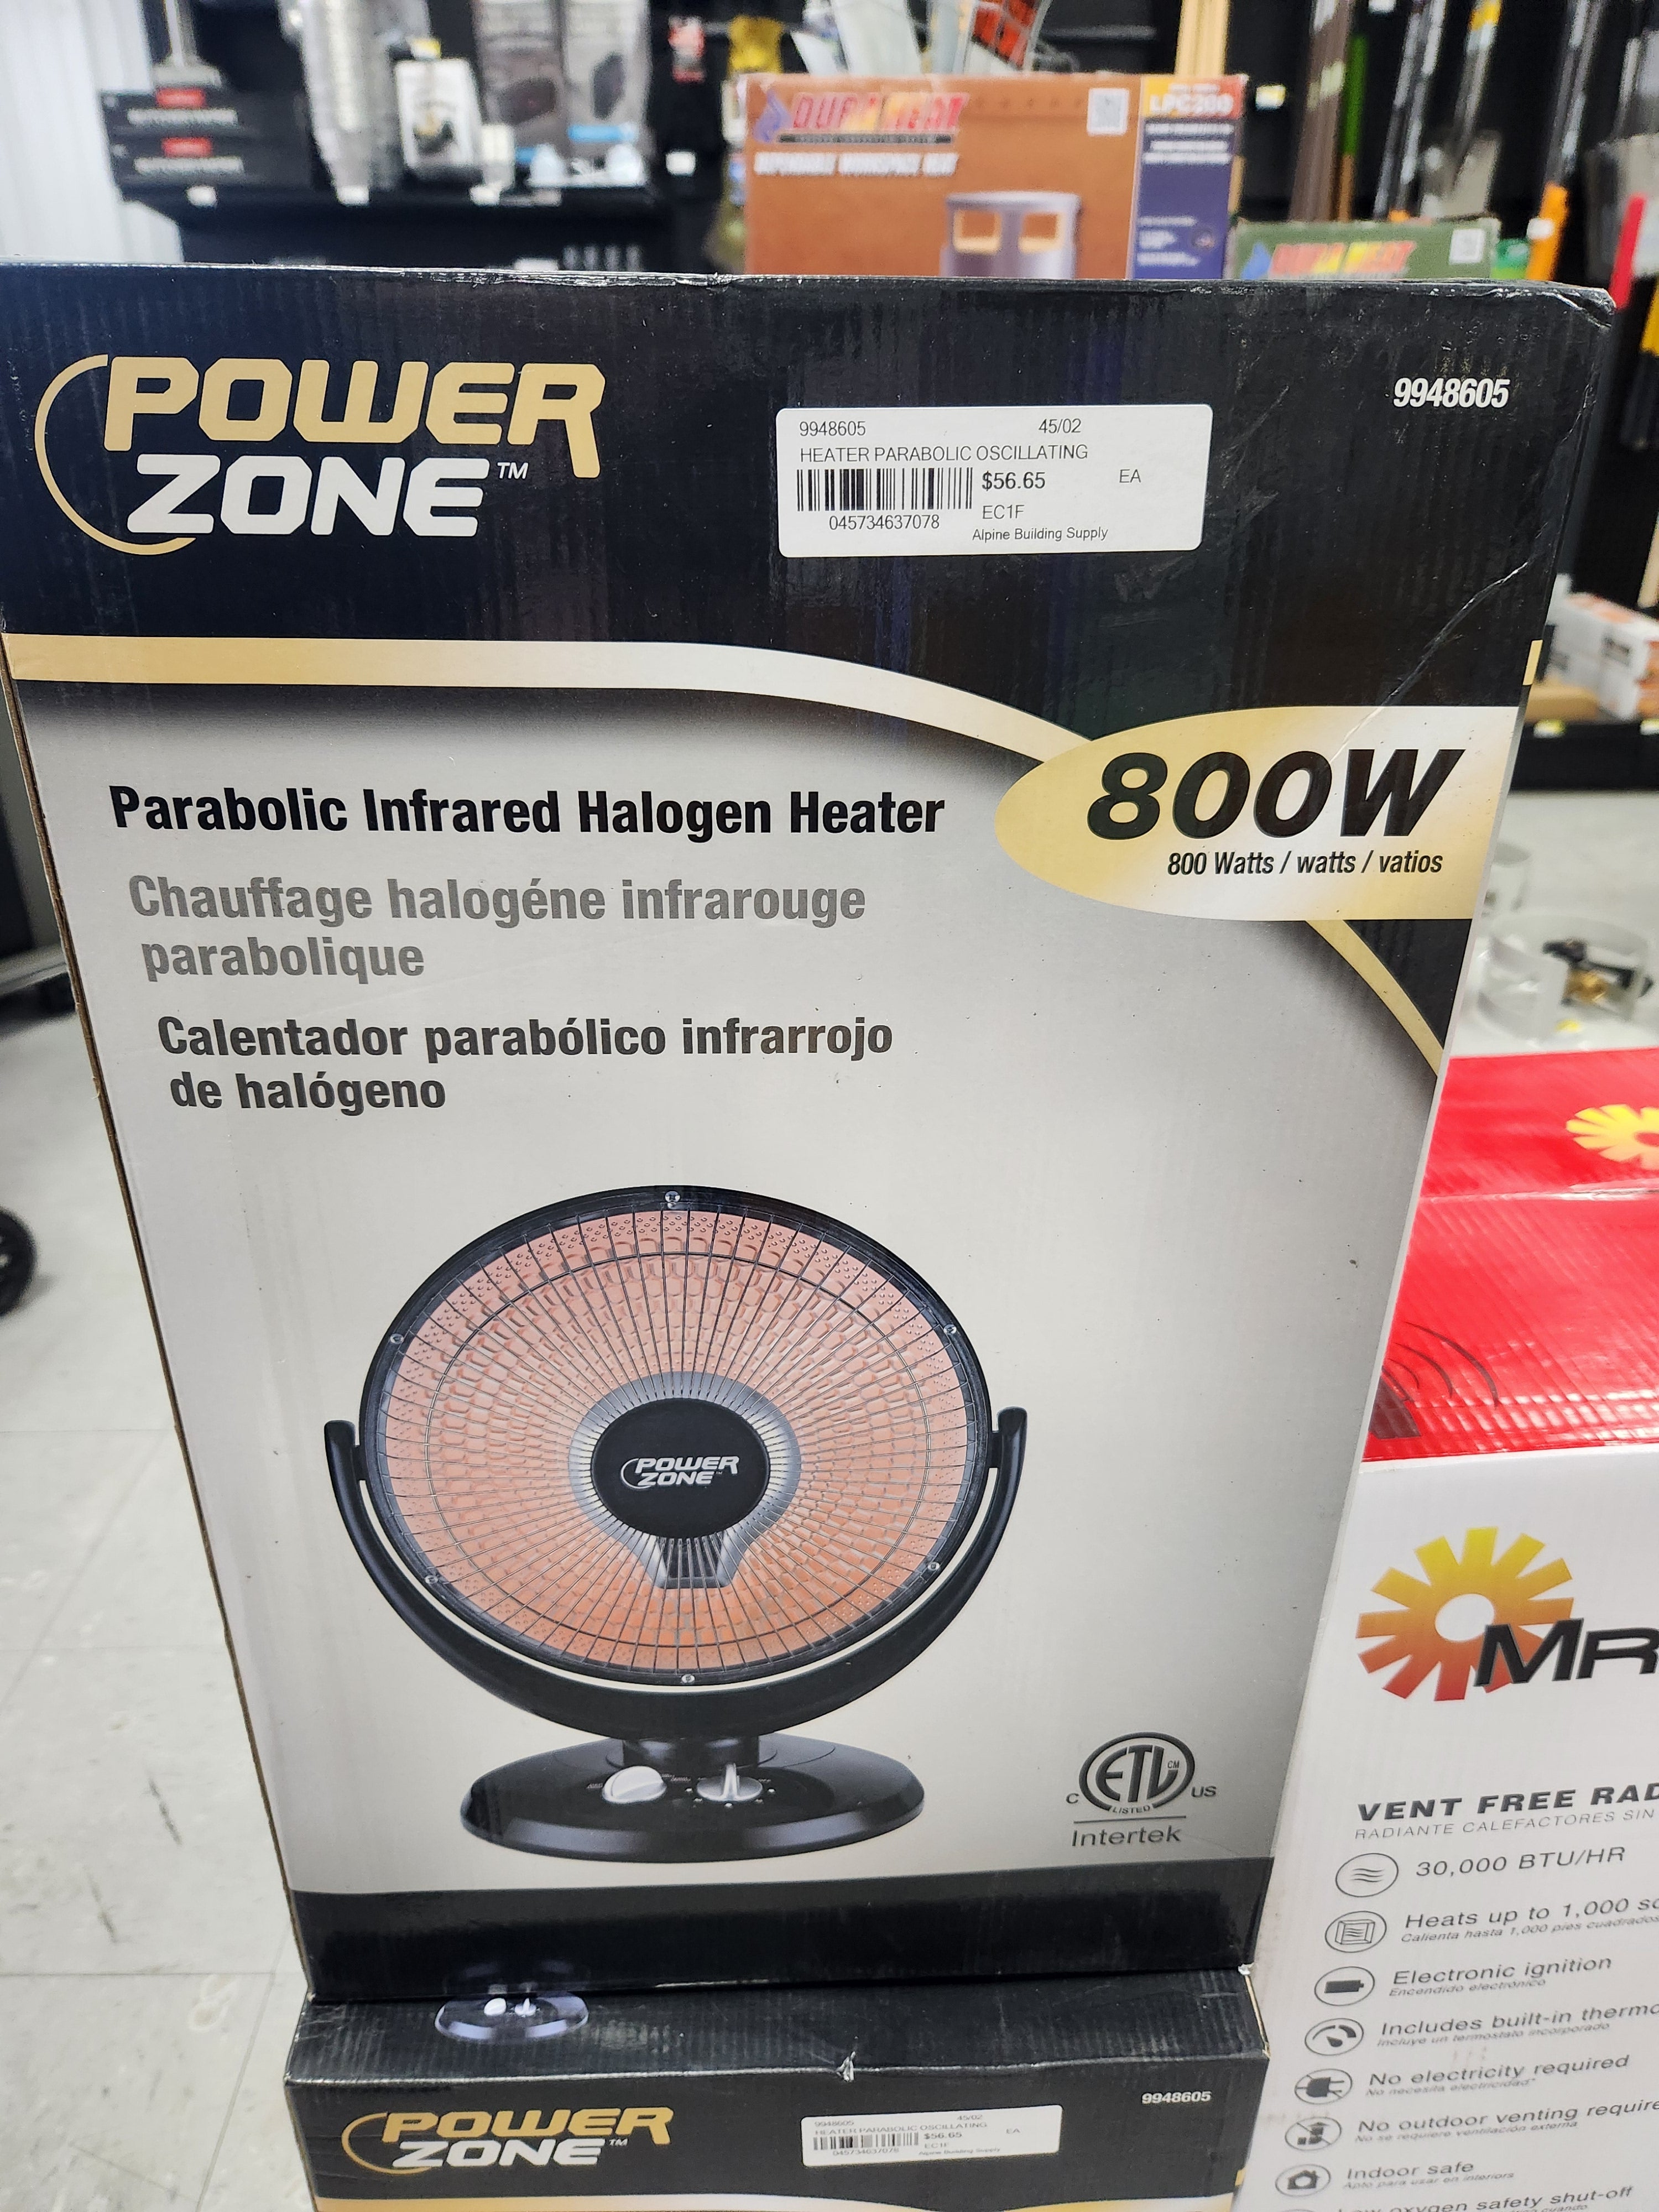 Power Zone Parabolic Infrared Halogen Heater, 800 W -- 99488605